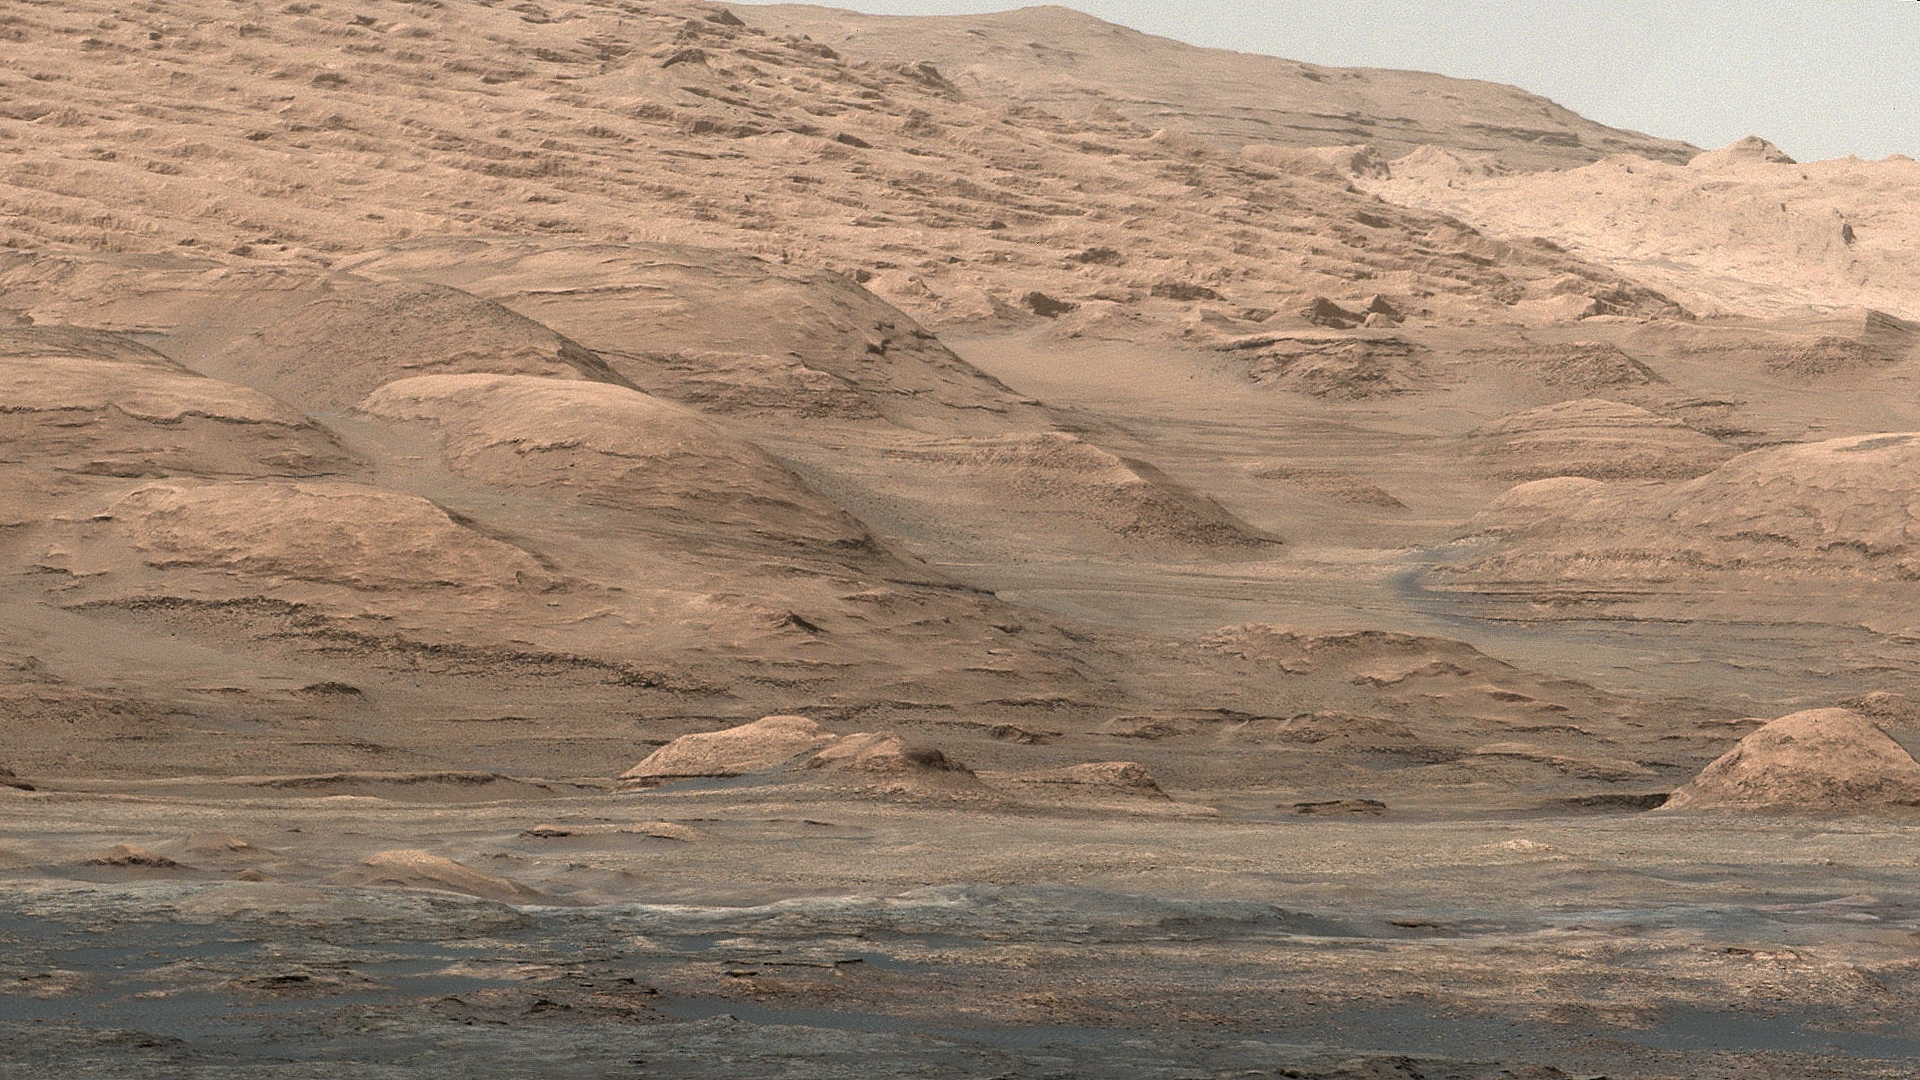 mars-curiosity-rover-mount-sharp-pia19083-Sol387-full